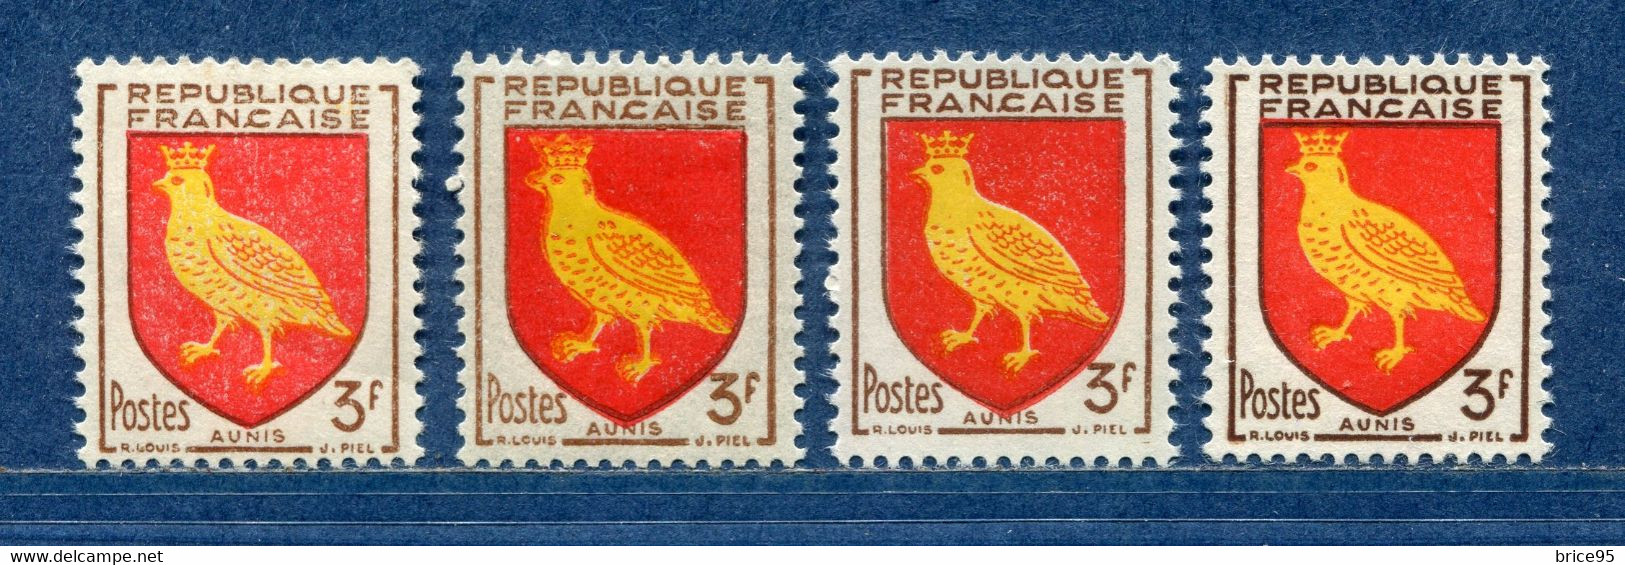 ⭐ France - Variété - YT N° 1004 - Couleurs - Pétouilles - Neuf Sans Charnière - 1954 ⭐ - Nuovi